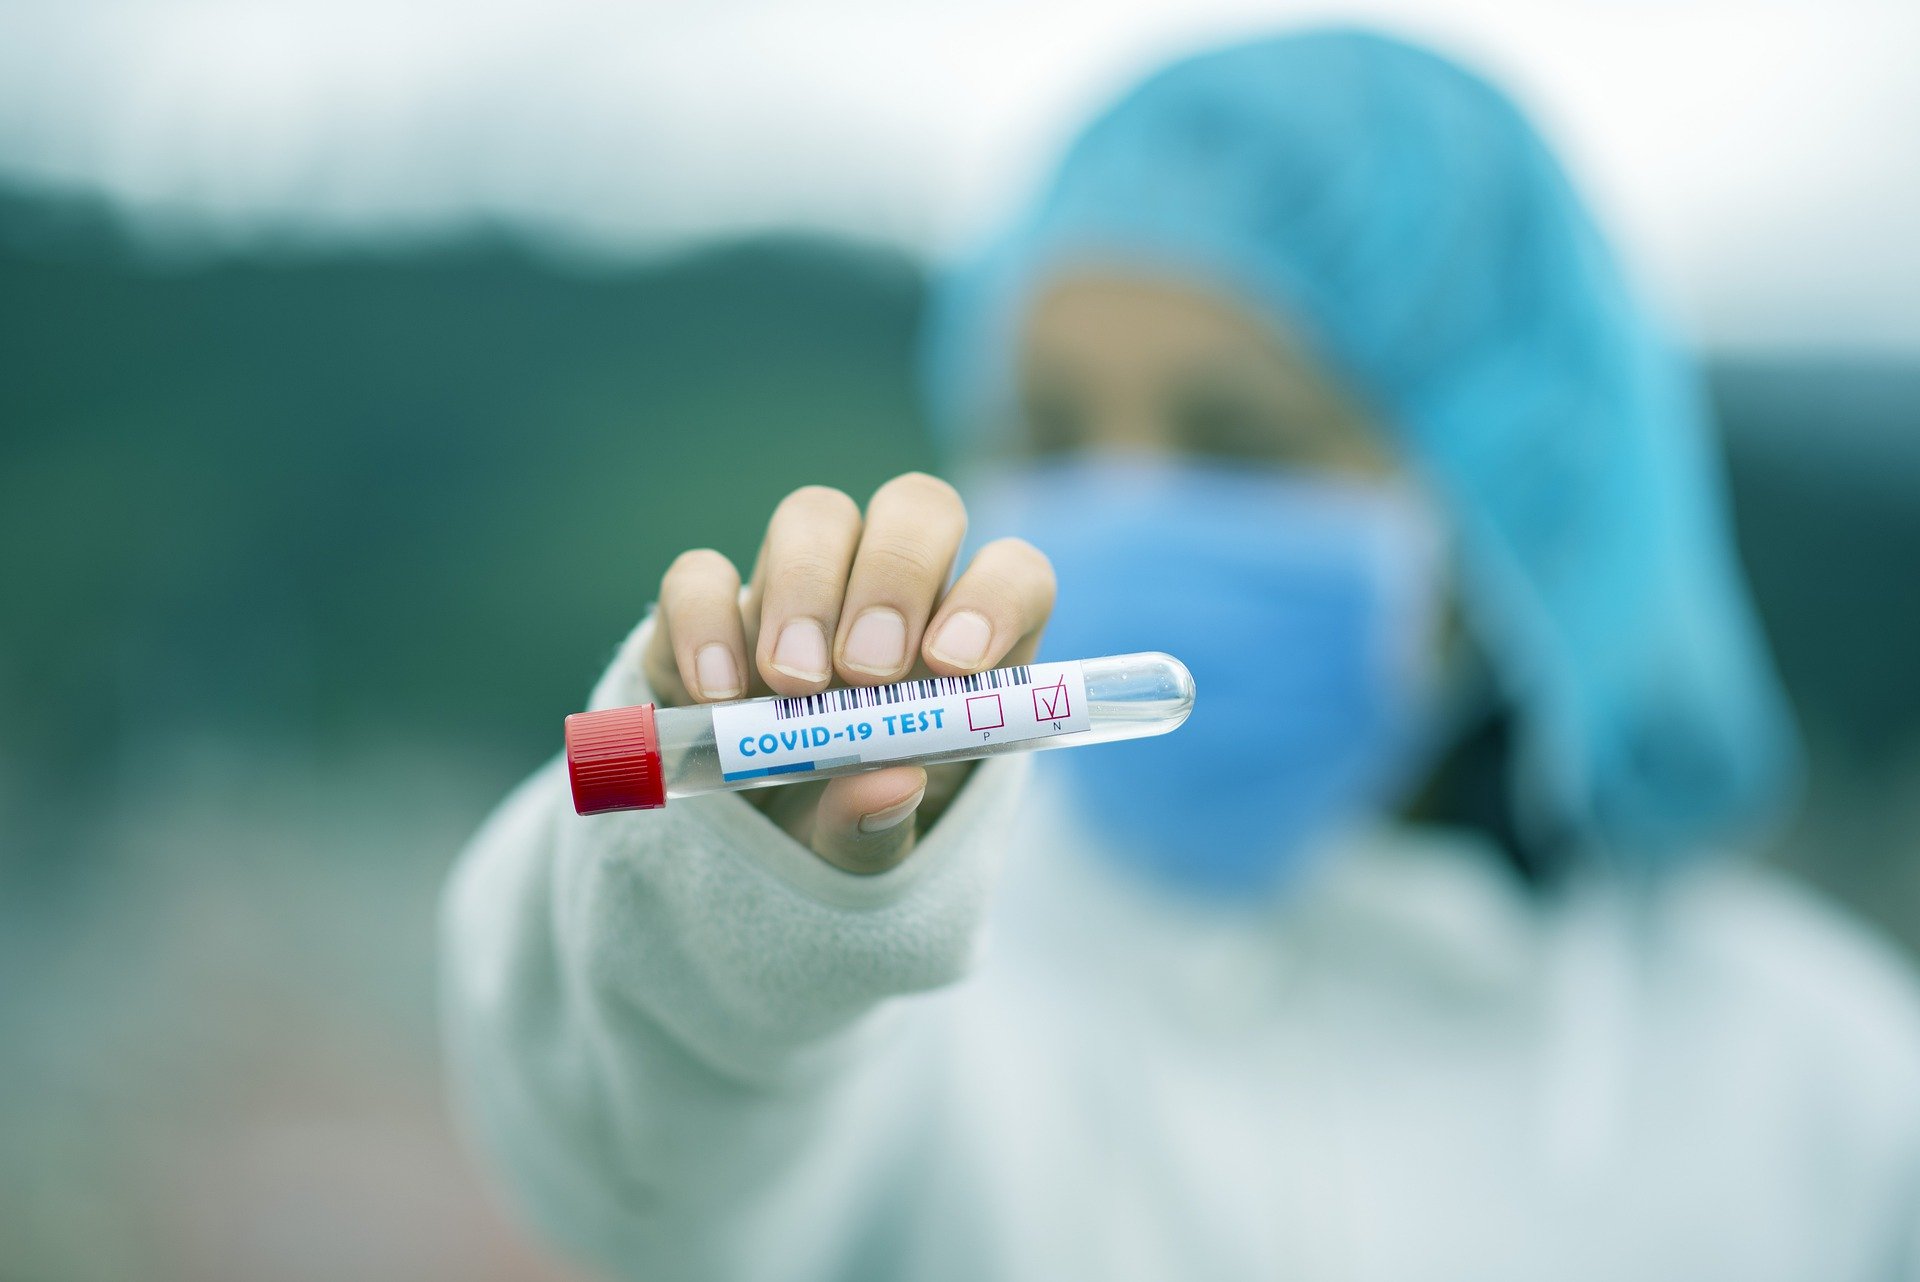 Coronavirus, in Toscana sono 15 i nuovi casi (ben 5 individuati grazie ai test sierologici). I decessi sono 9, le guarigioni 238, di cui 180 virali